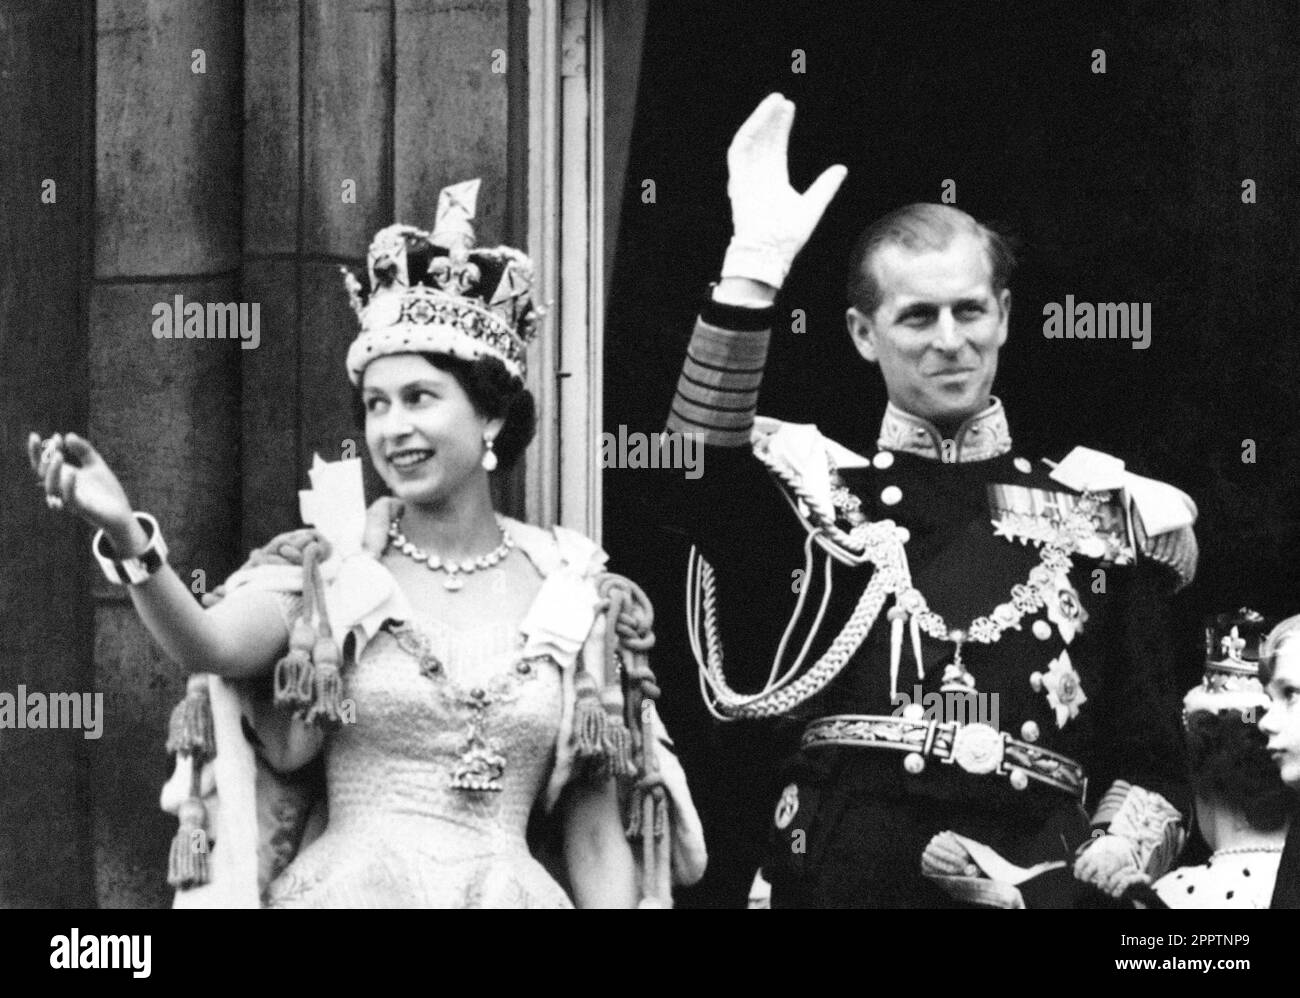 Das Aktenfoto datiert vom 02.06/53, von Königin Elizabeth II., trägt die kaiserliche Staatskrone, und dem Herzog von Edinburgh, gekleidet in Uniform von Admiral der Flotte, winkend vom Balkon zu den zuschauenden Menschenmassen an den Toren des Buckingham Palastes nach der Krönung. Die Krönung von 1953 war in den harten Nachkriegsjahren, in denen Millionen den historischen Tag feierten, ein Motivationsschub. Elizabeth II. Wurde am 2 1953. Juni in einer zutiefst religiösen Zeremonie in Westminster Abbey gekrönt. Ausgabedatum: Dienstag, 25. April 2023. Stockfoto